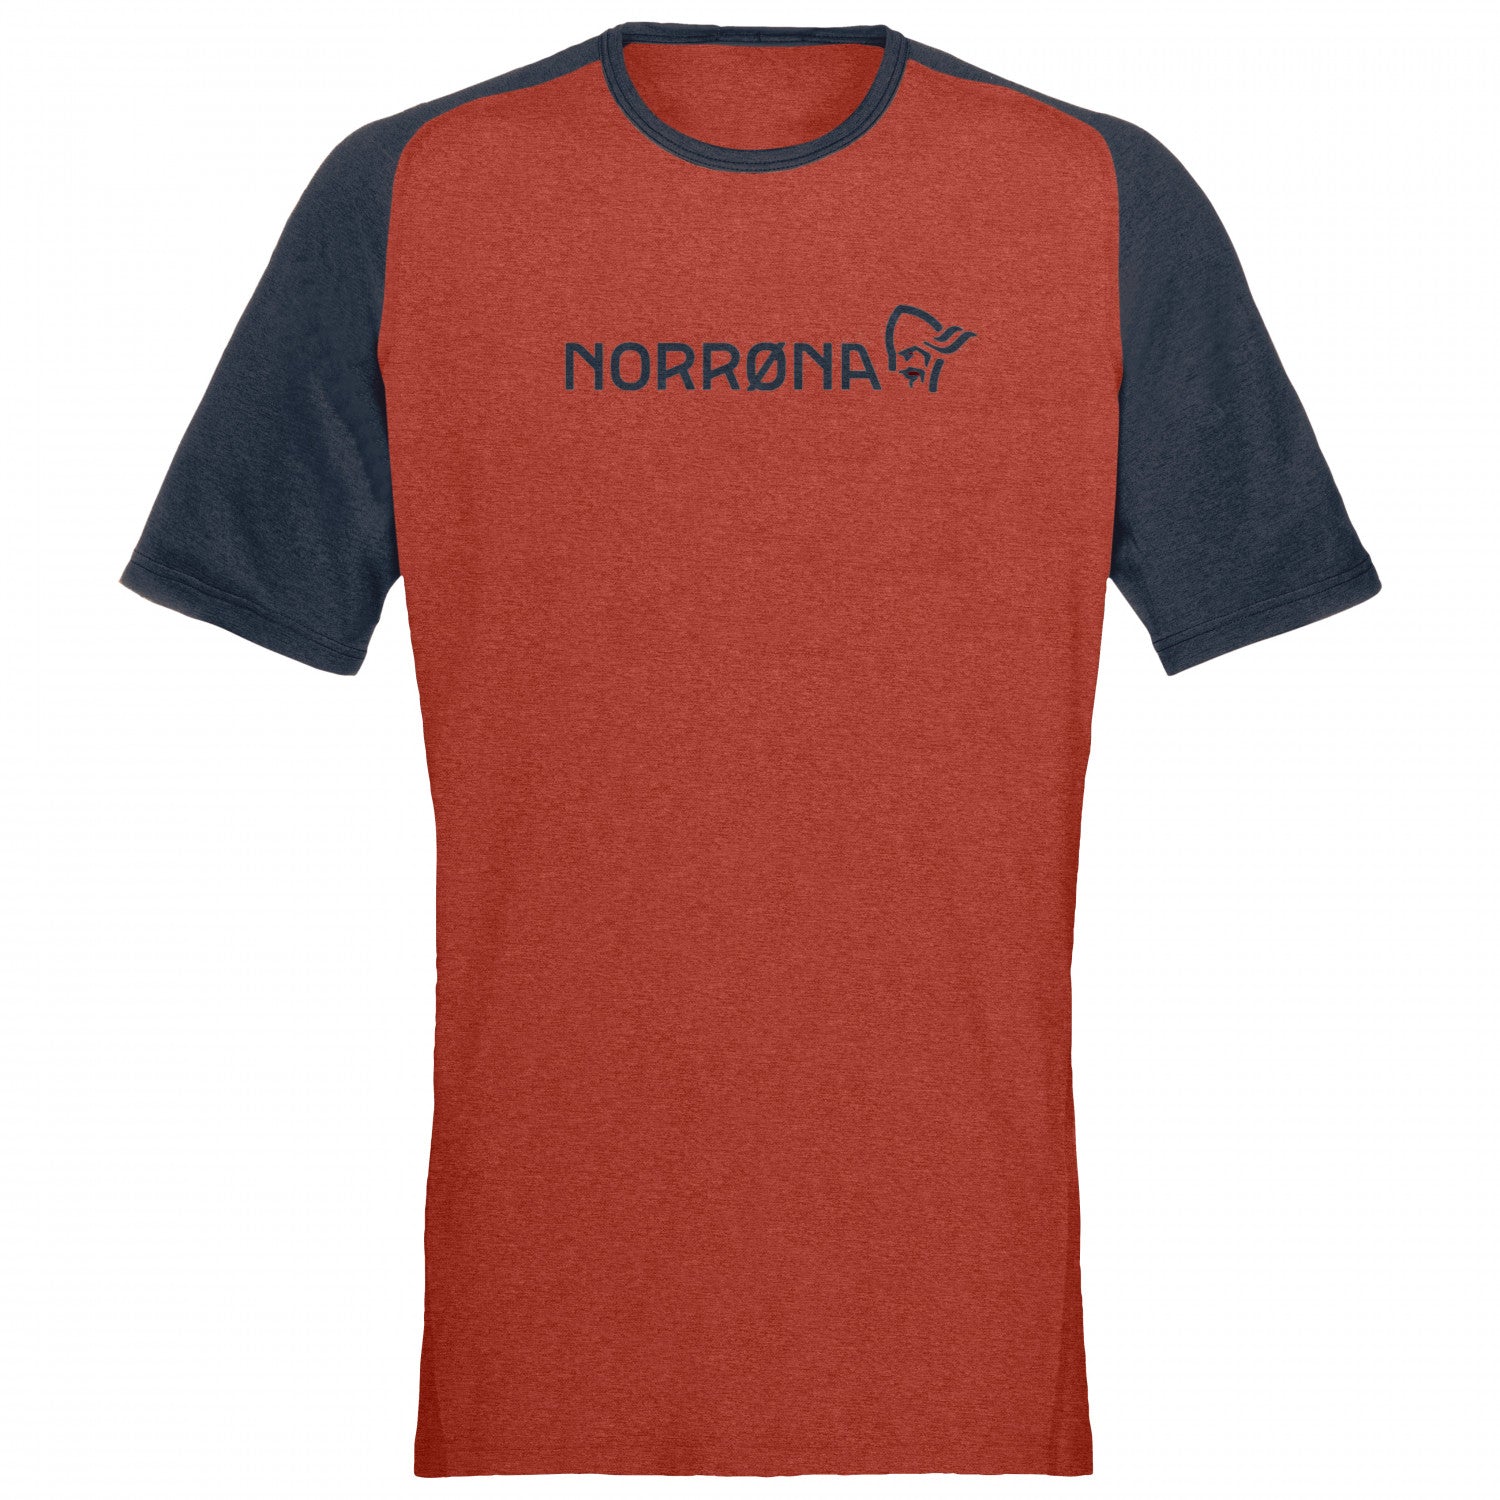 norroena-fjoeraa-equaliser-lightweight-t-shirt-cycling-jersey.jpg